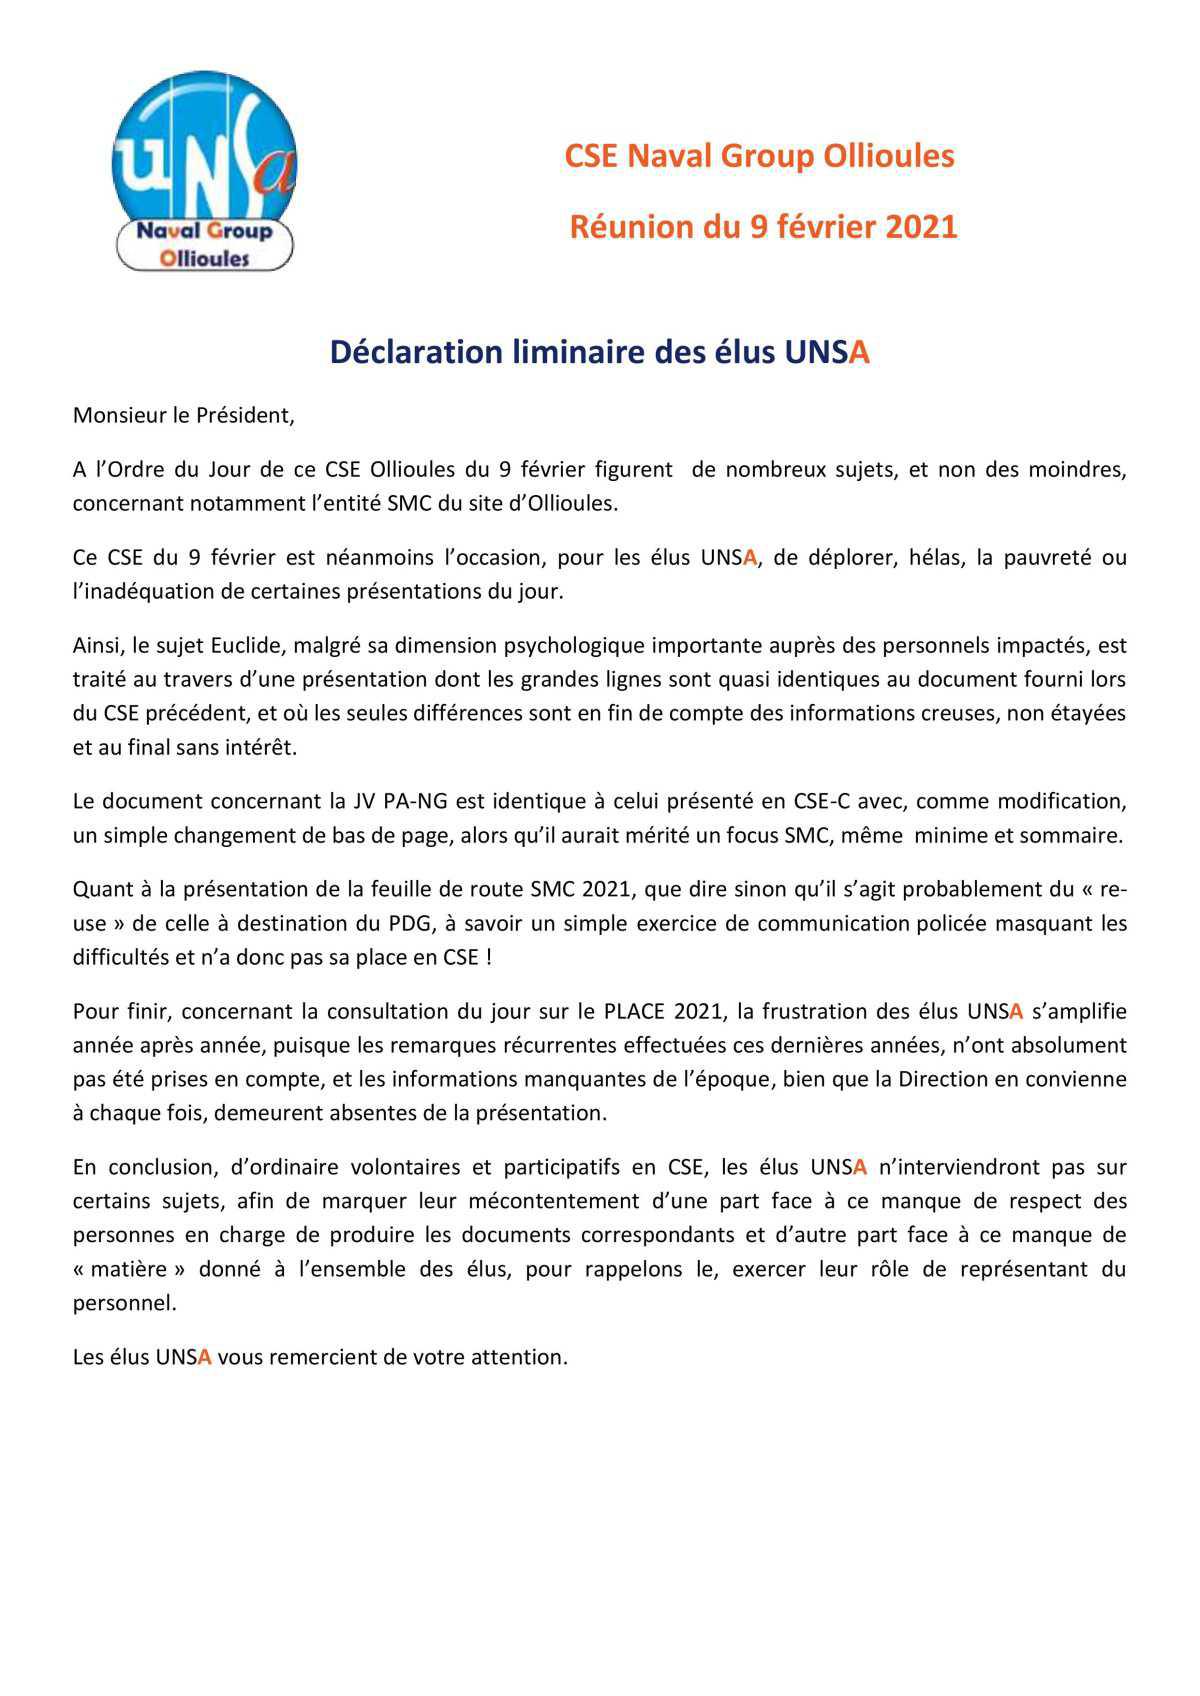 CSE d'Ollioules - réunion du 9 février 2021 - déclaration liminaire UNSA